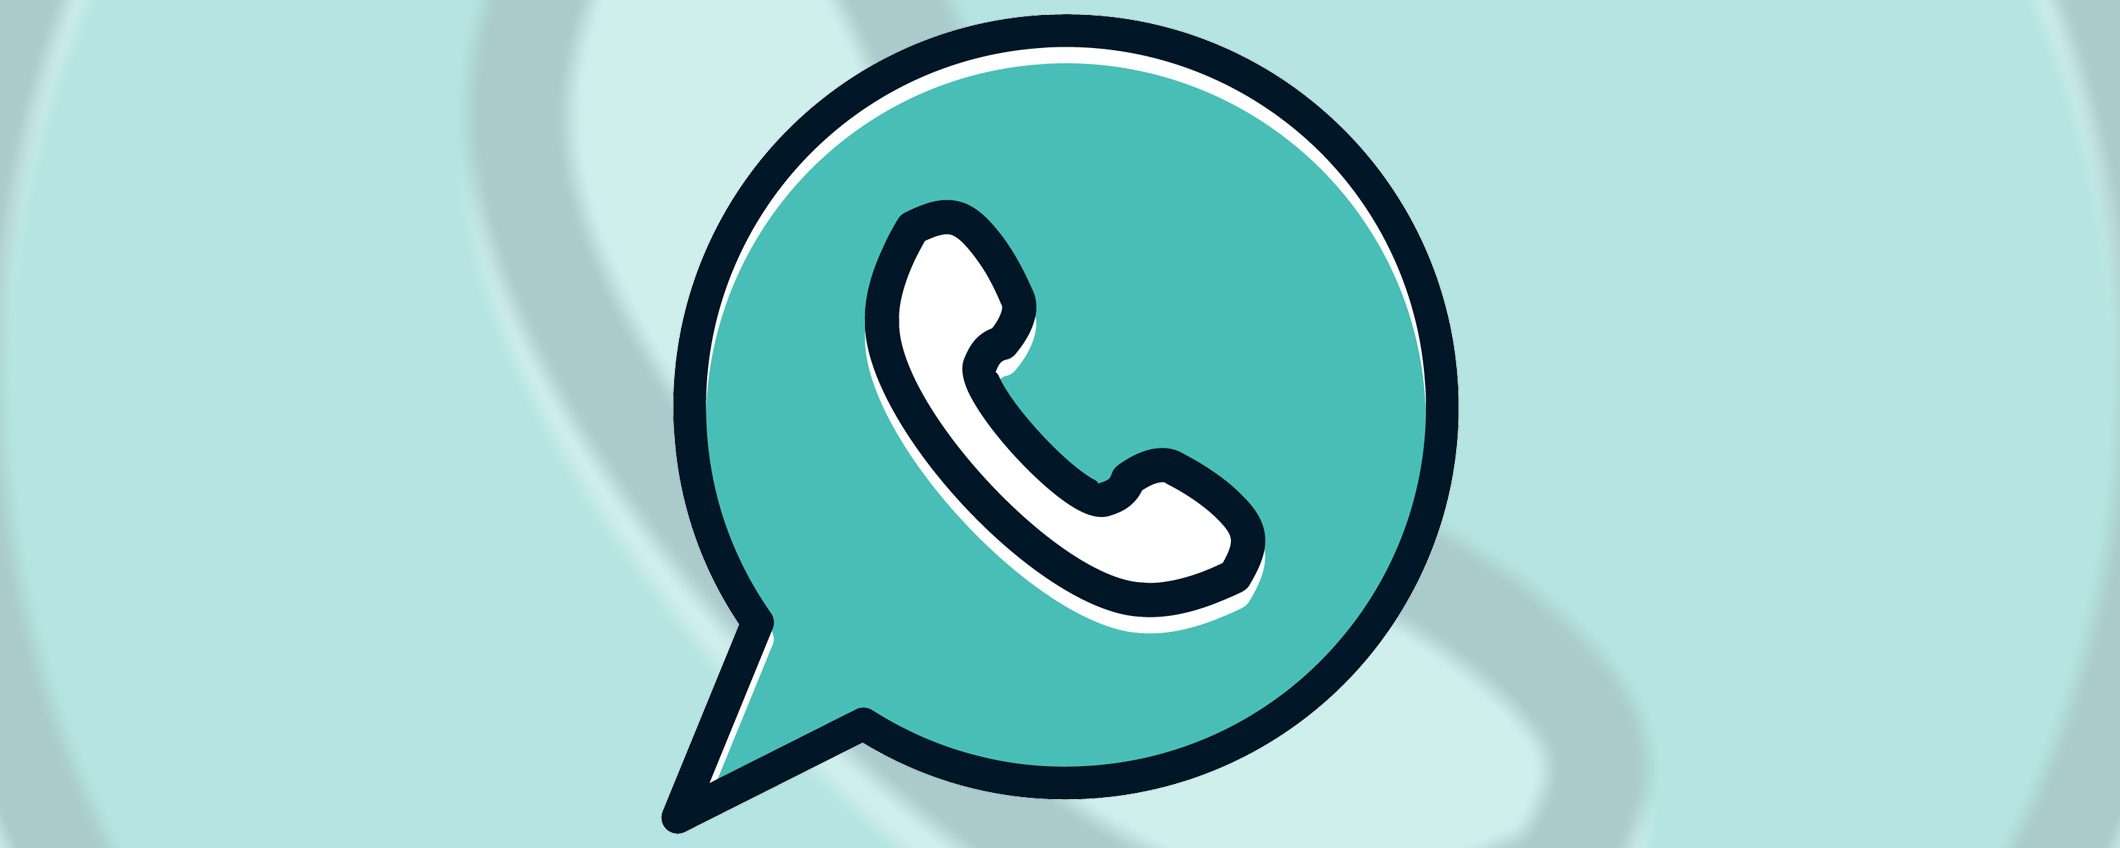 WhatsApp: ascolto dei vocali fuori dalle chat